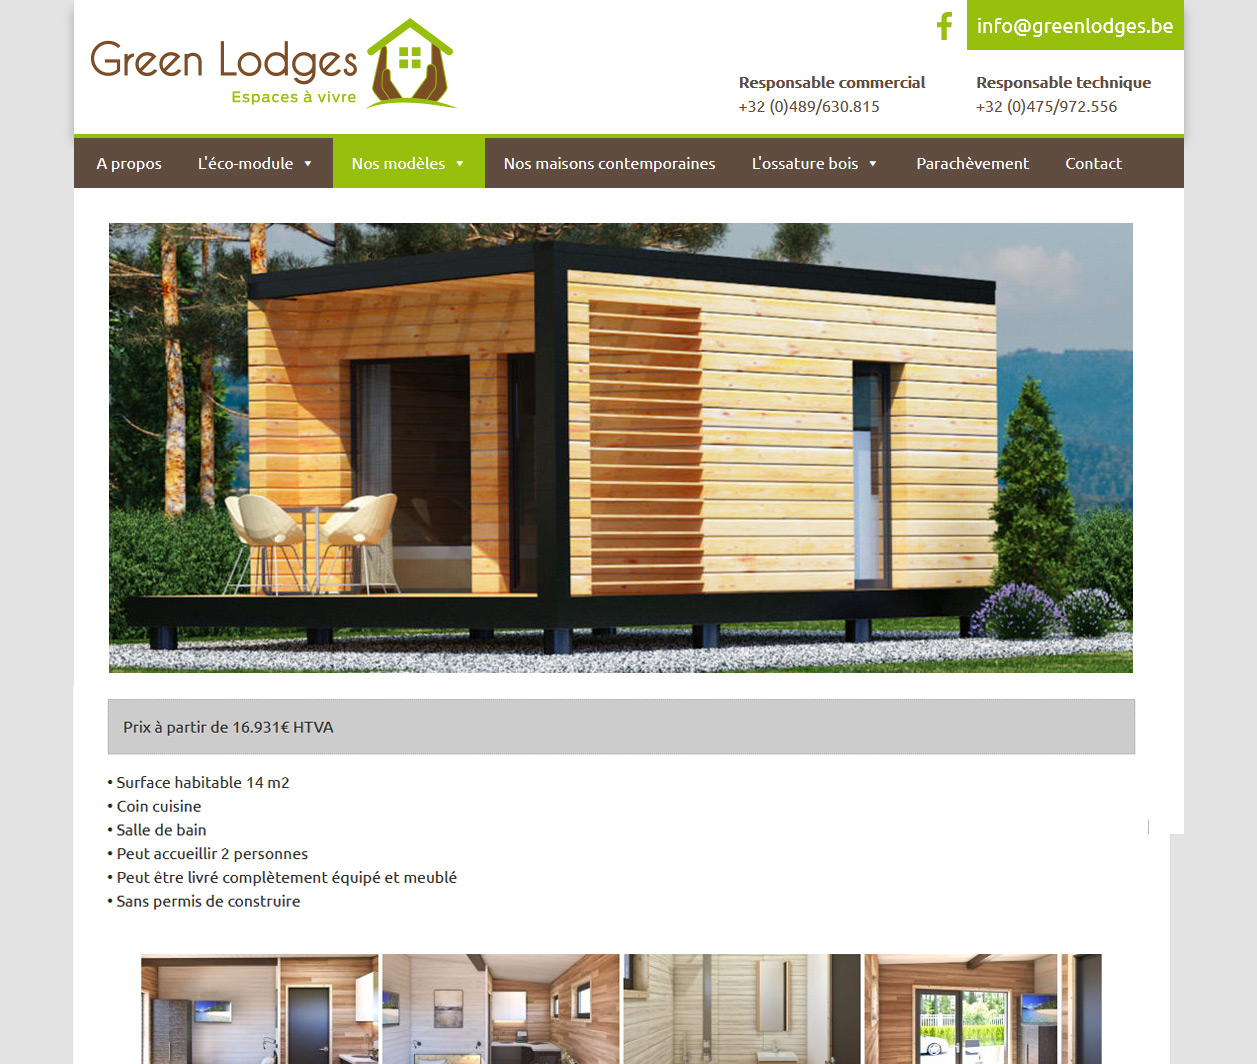 Green Lodges